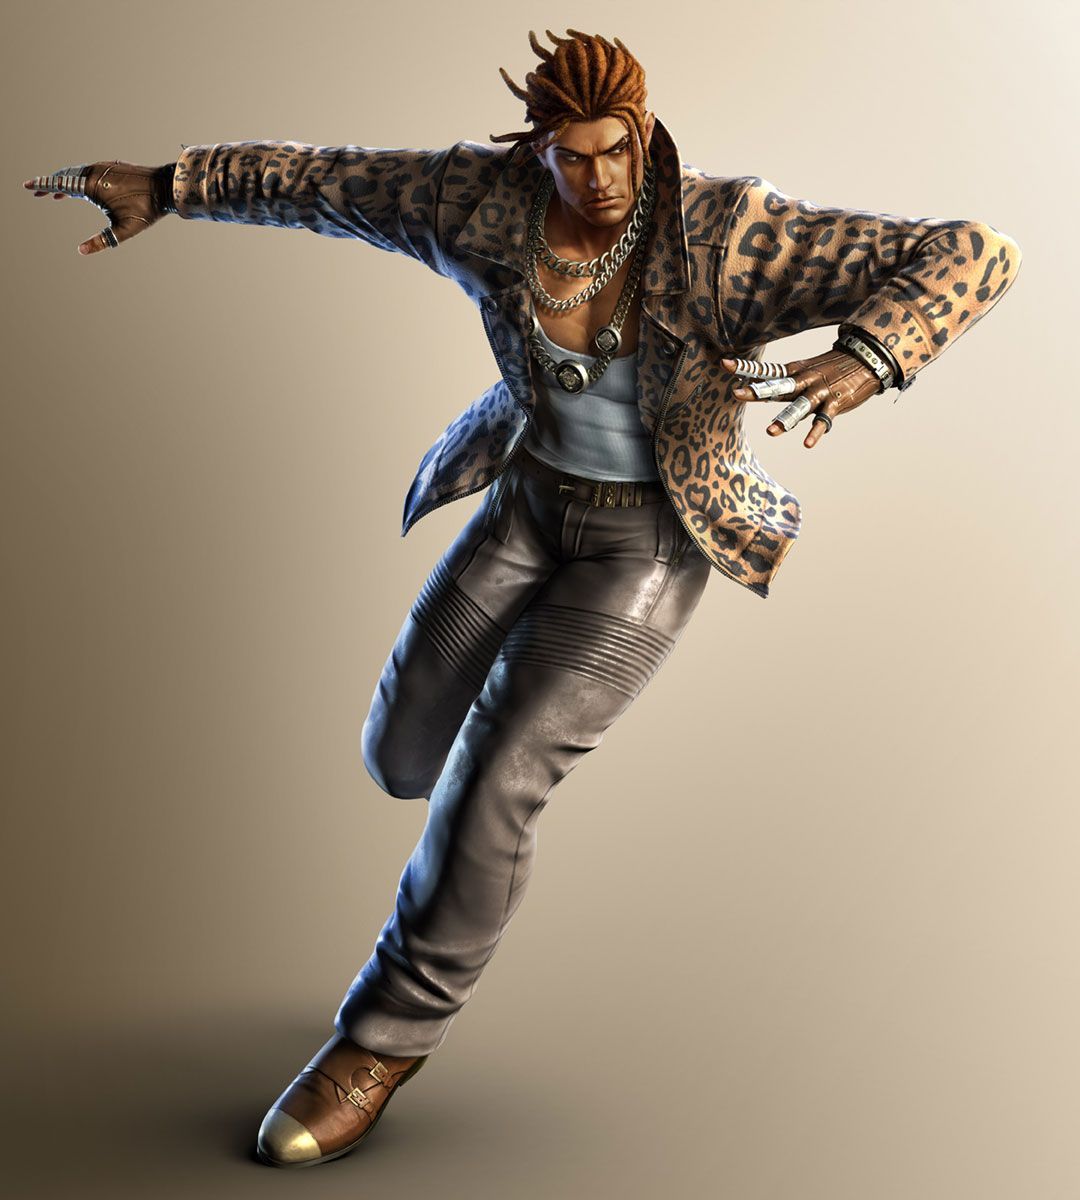 Eddy Gordo character art from Tekken 7 .com